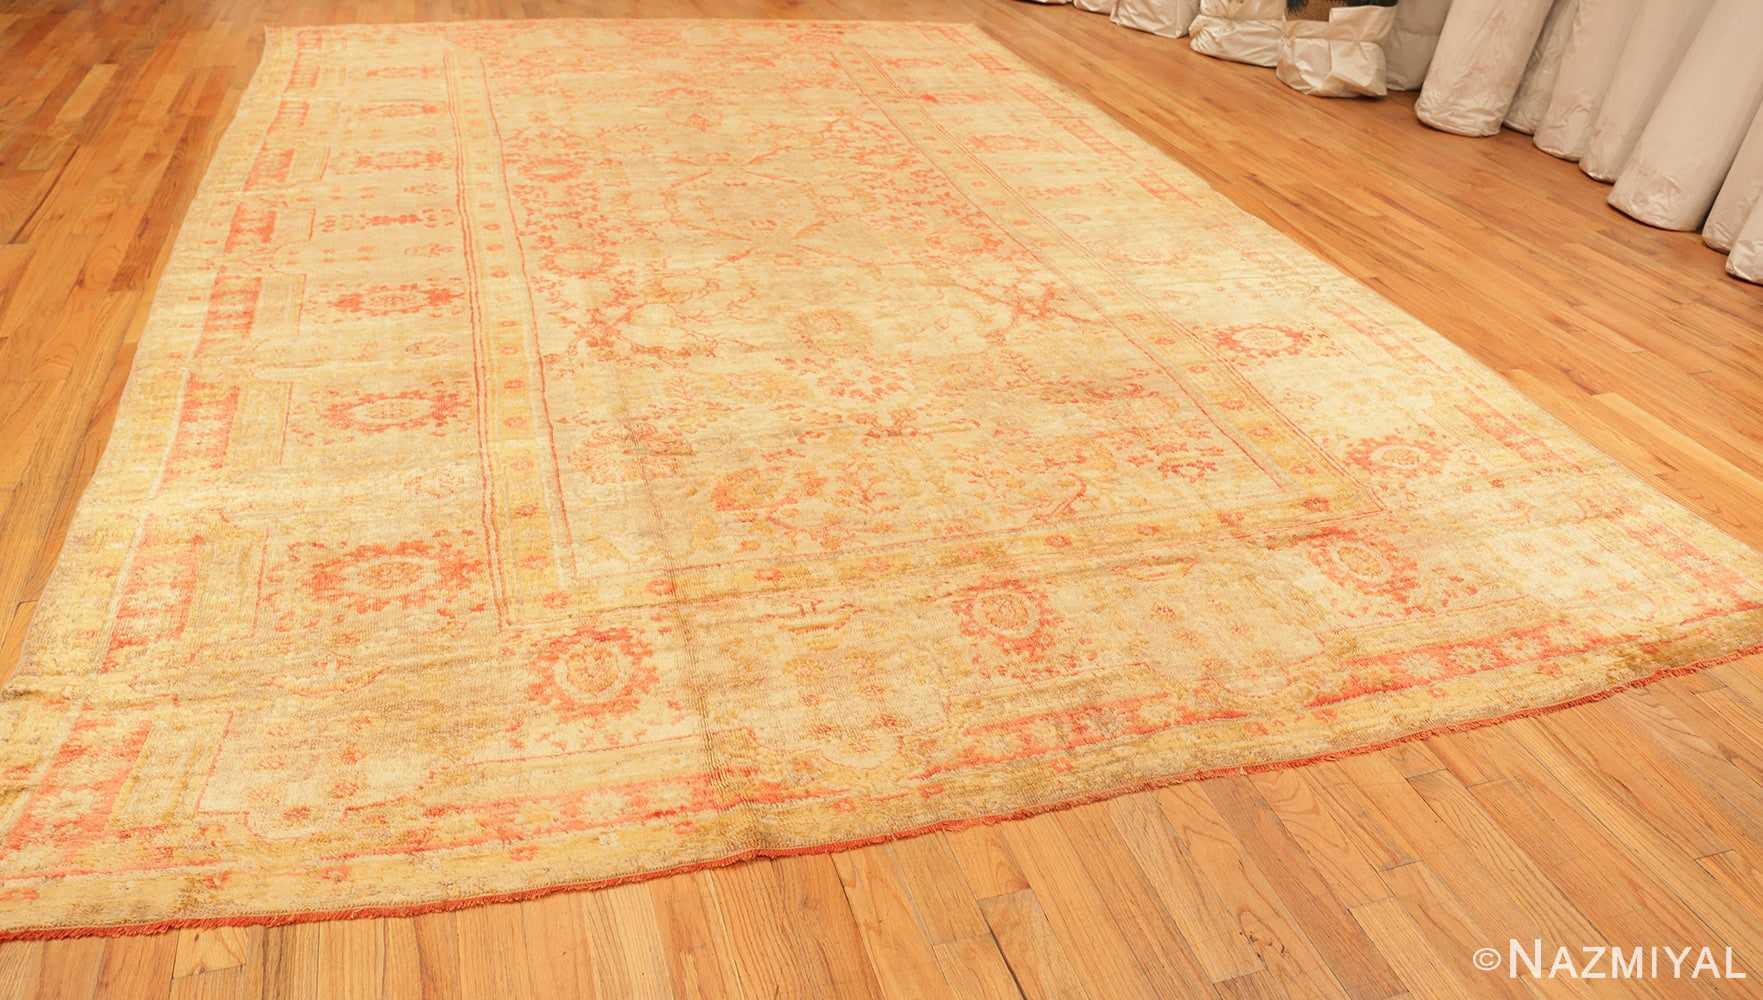 Full antique Oushak Turkish rug 70235 by Nazmiyal